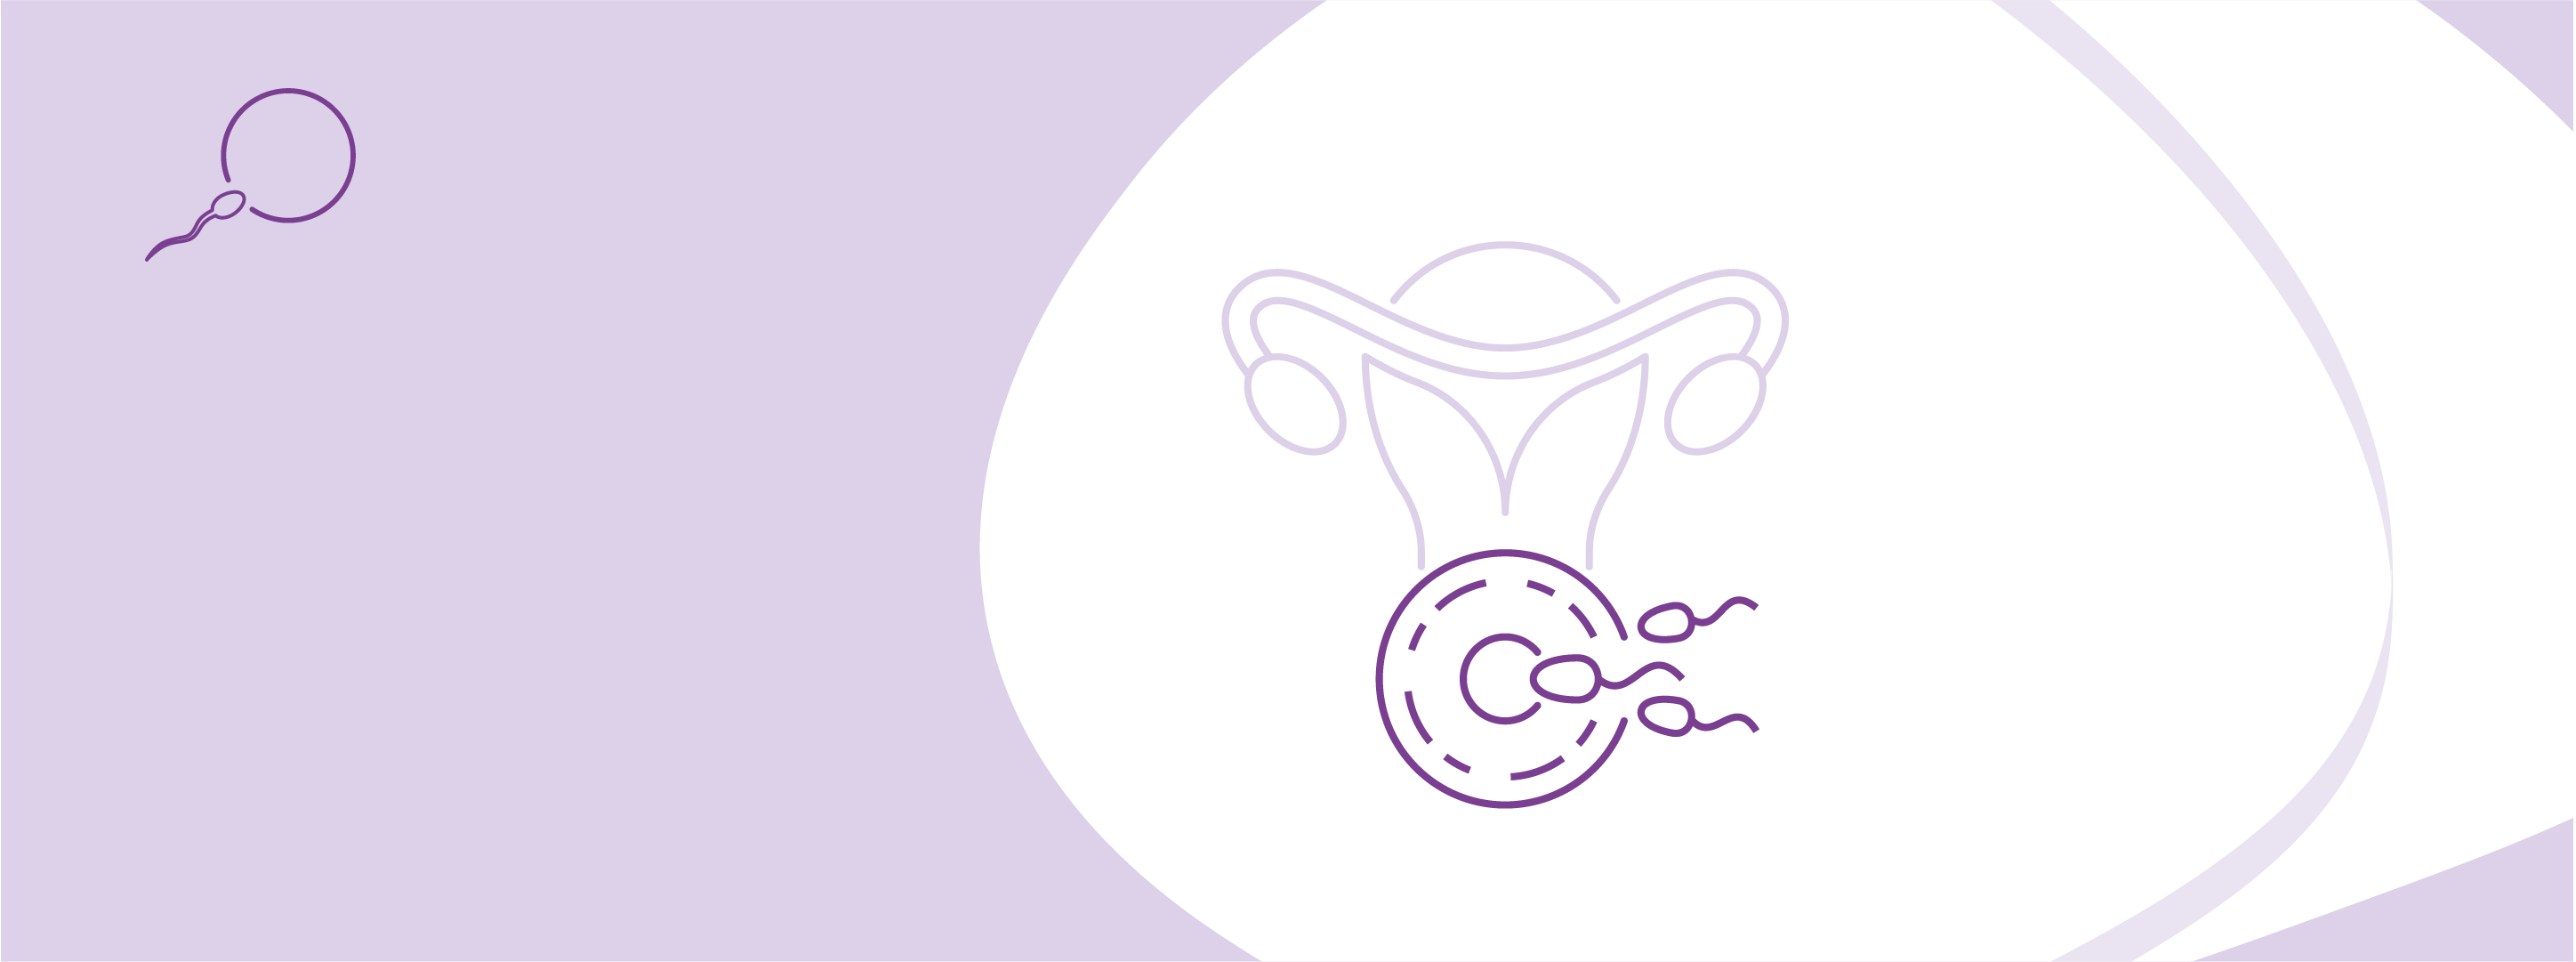 Програма ЕКЗ із донорськими яйцеклітинами за допомогою сурогатного материнства (до 15 яйцеклітин)